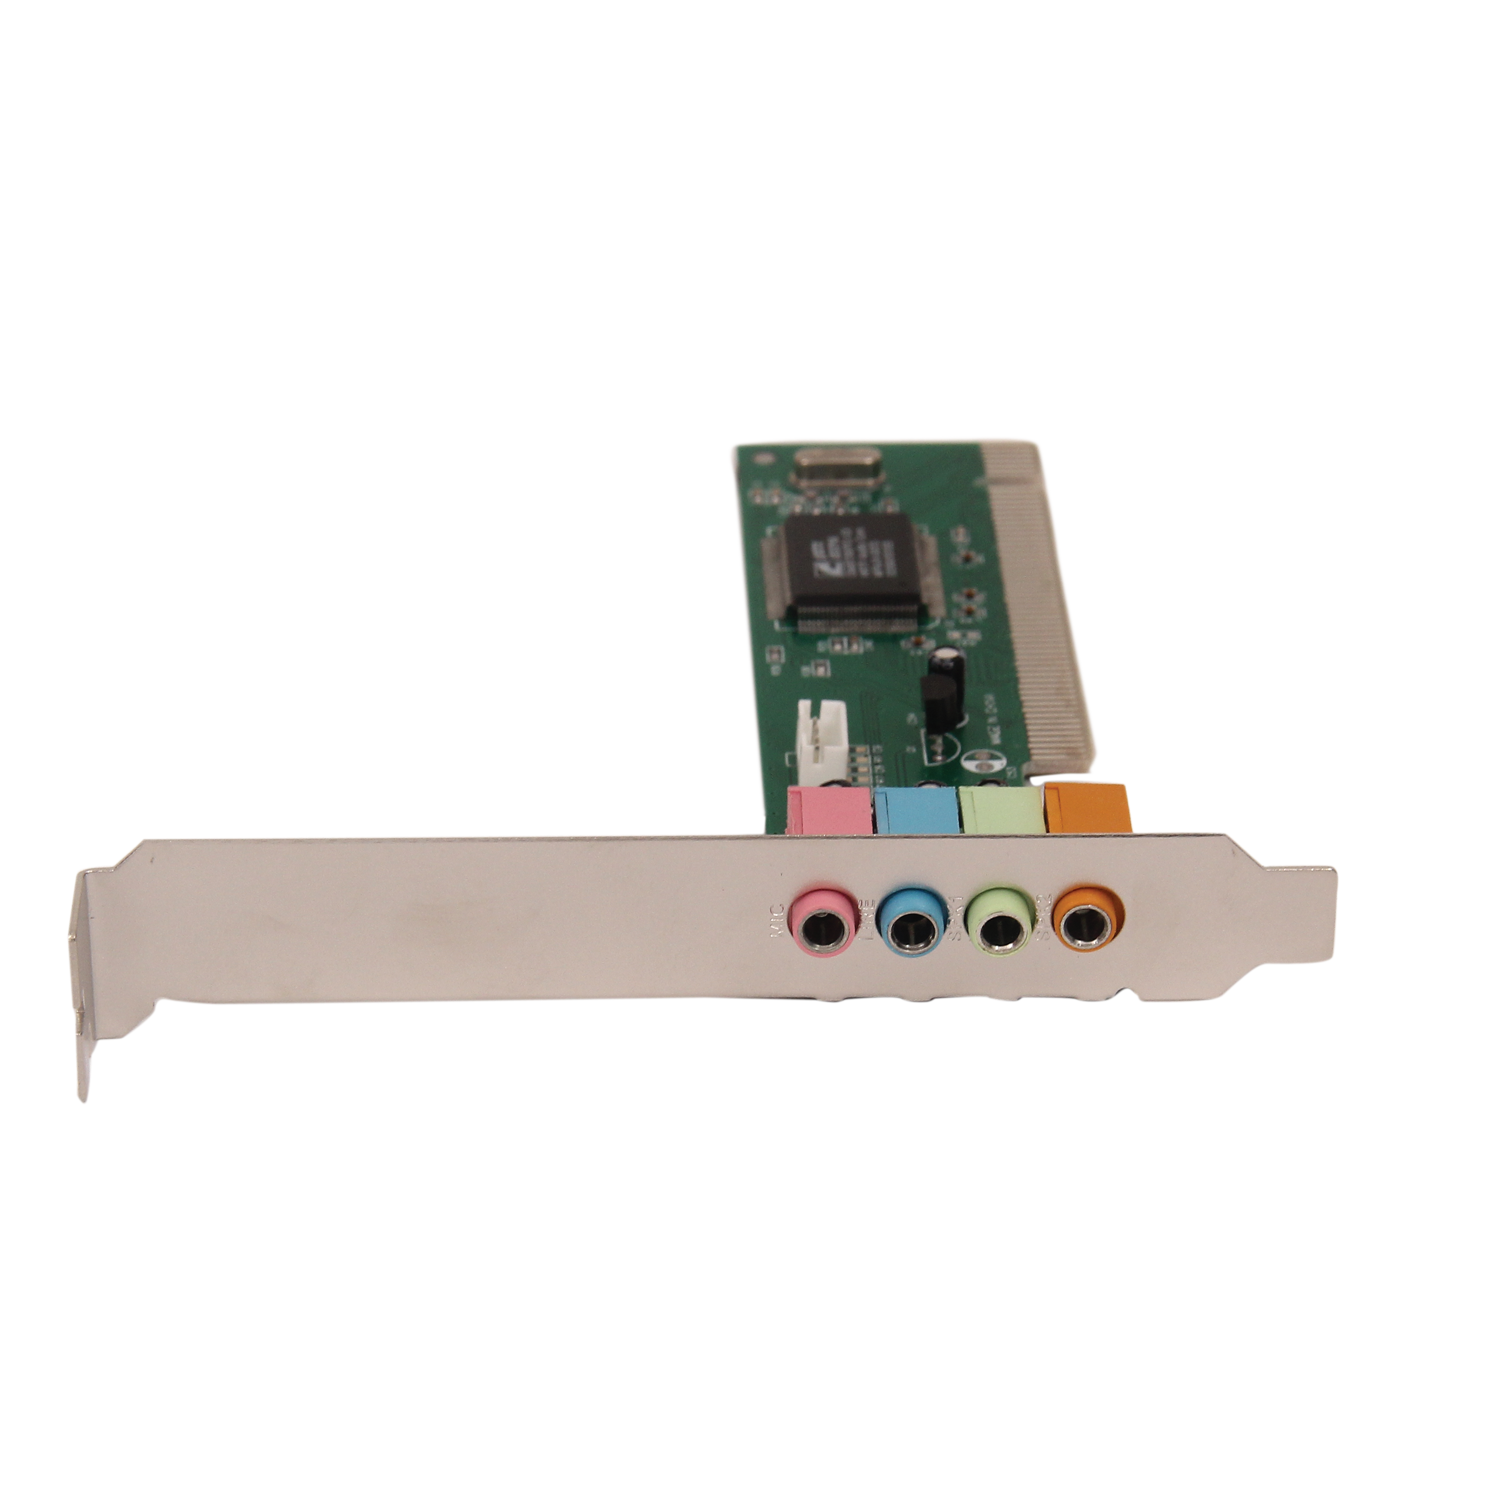 C media device. Звуковая карта c-Media 5.1. PCI. Звуковая карта DEXP 4.0 PCI. Звуковая карта DEXP 4.0 PCI [cmi8738 44-48khz, 4.0 channel]. Звуковая карта mt8738-1.